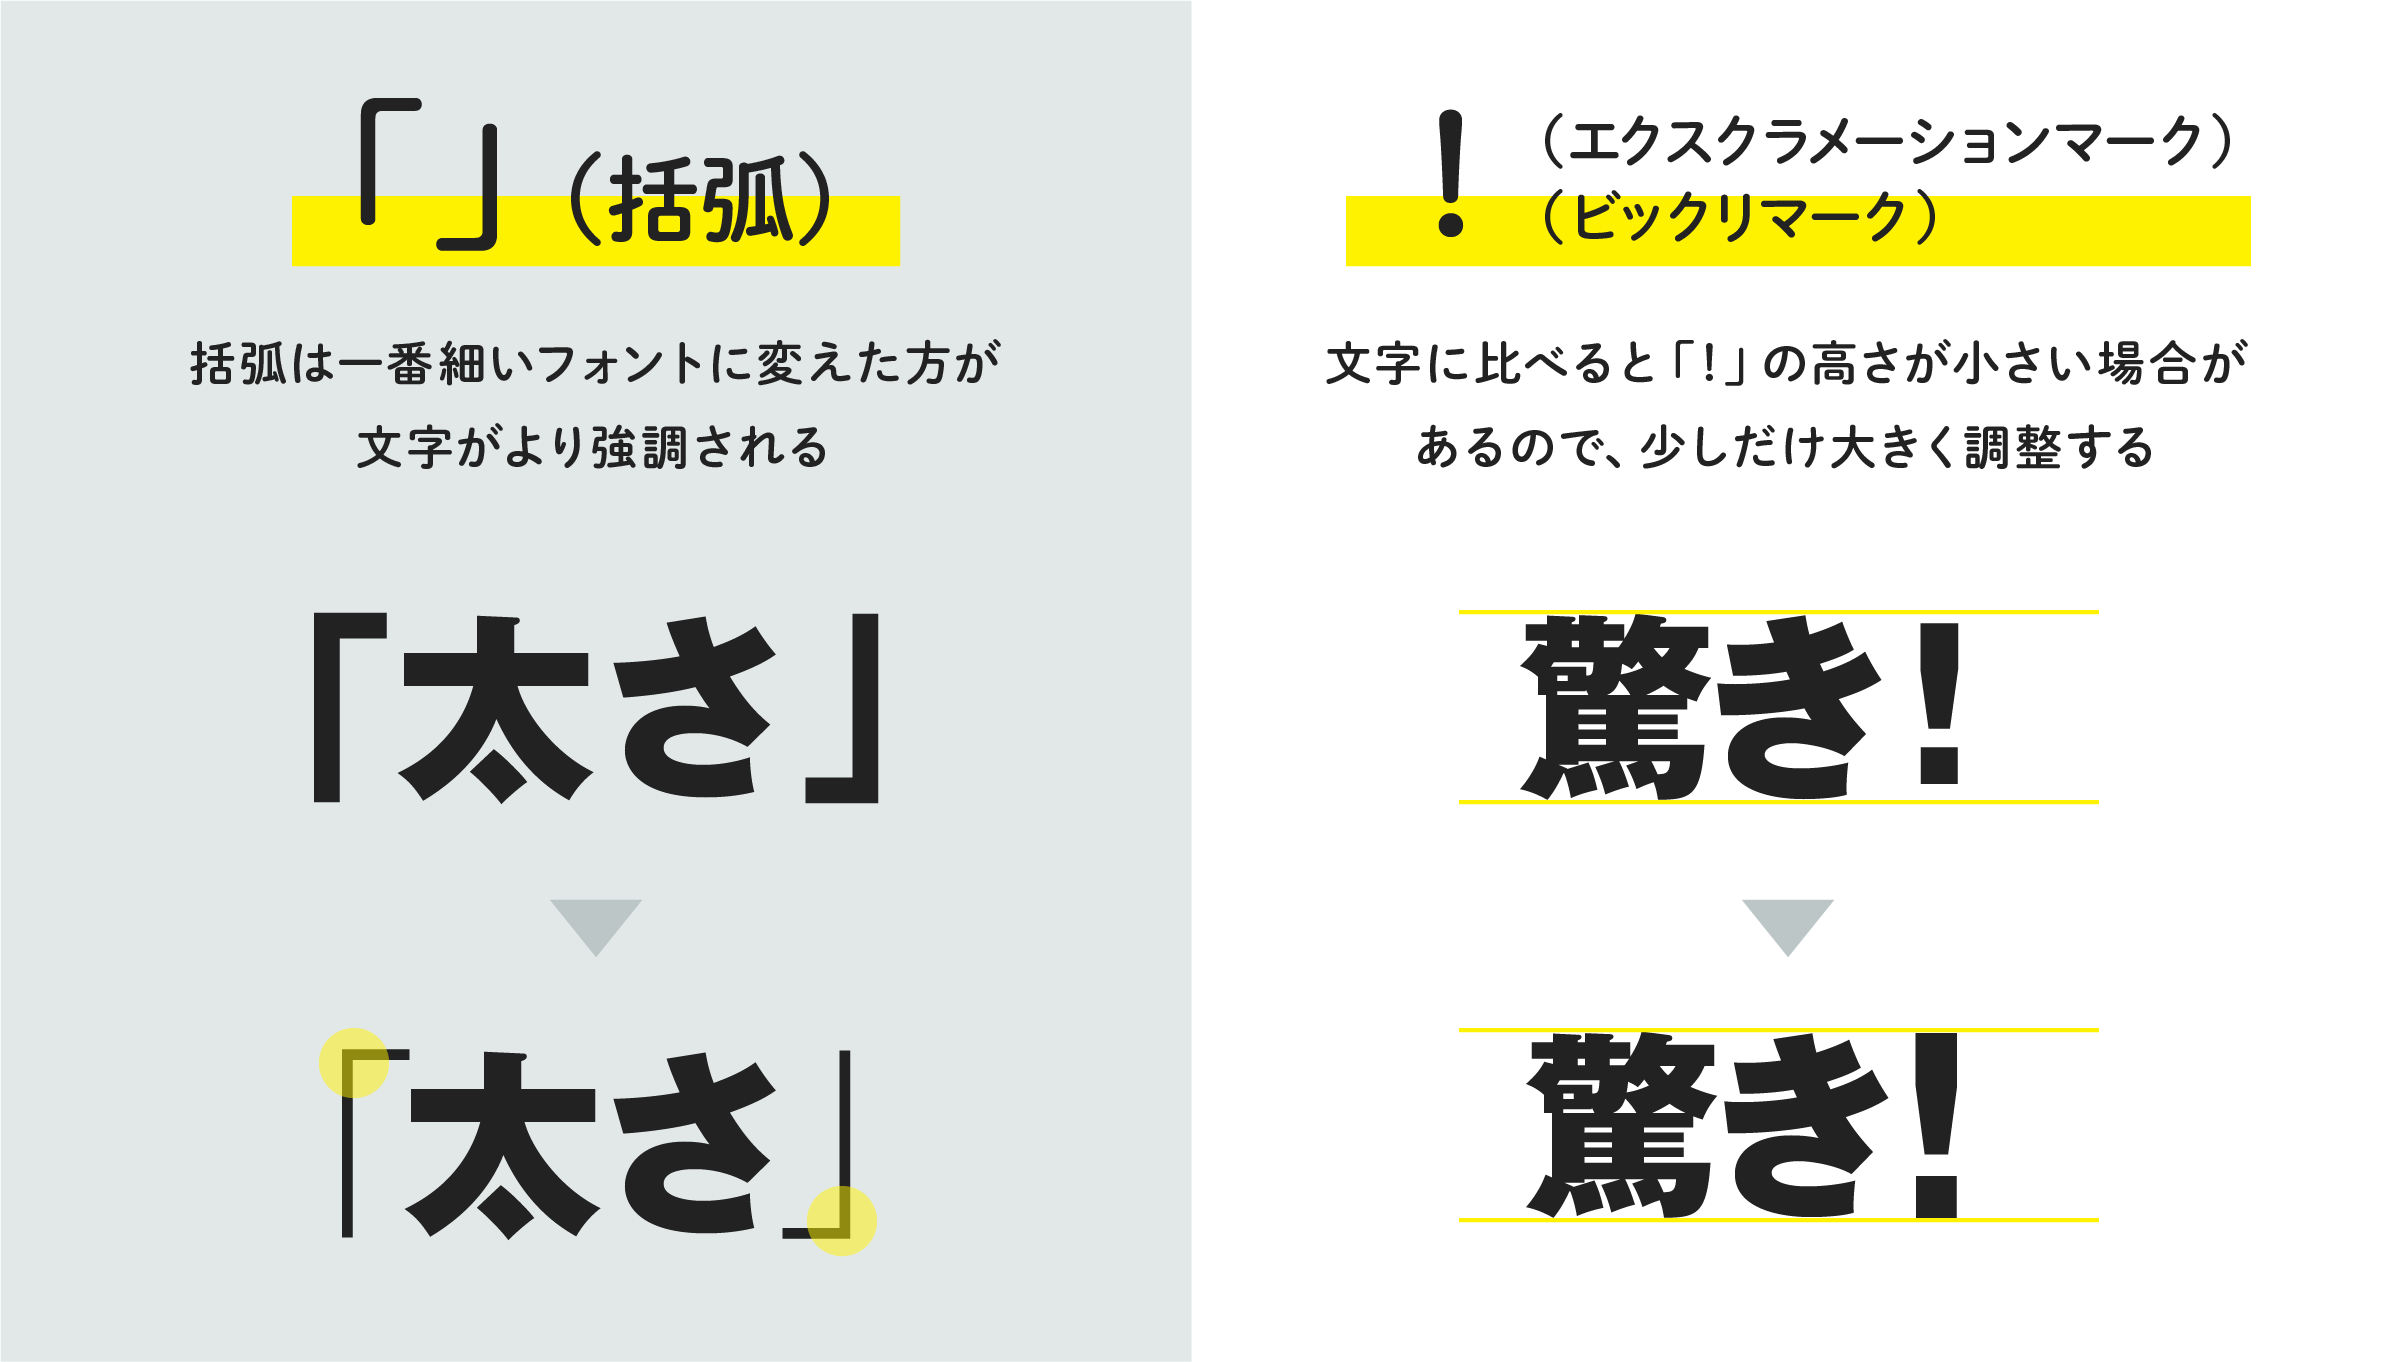 ナナ デザナビ デザインを図解で解説 日本語の 記号 を使う文字組みで綺麗に見せるためのデザインテクニック T Co 9dmd2fbsor Twitter